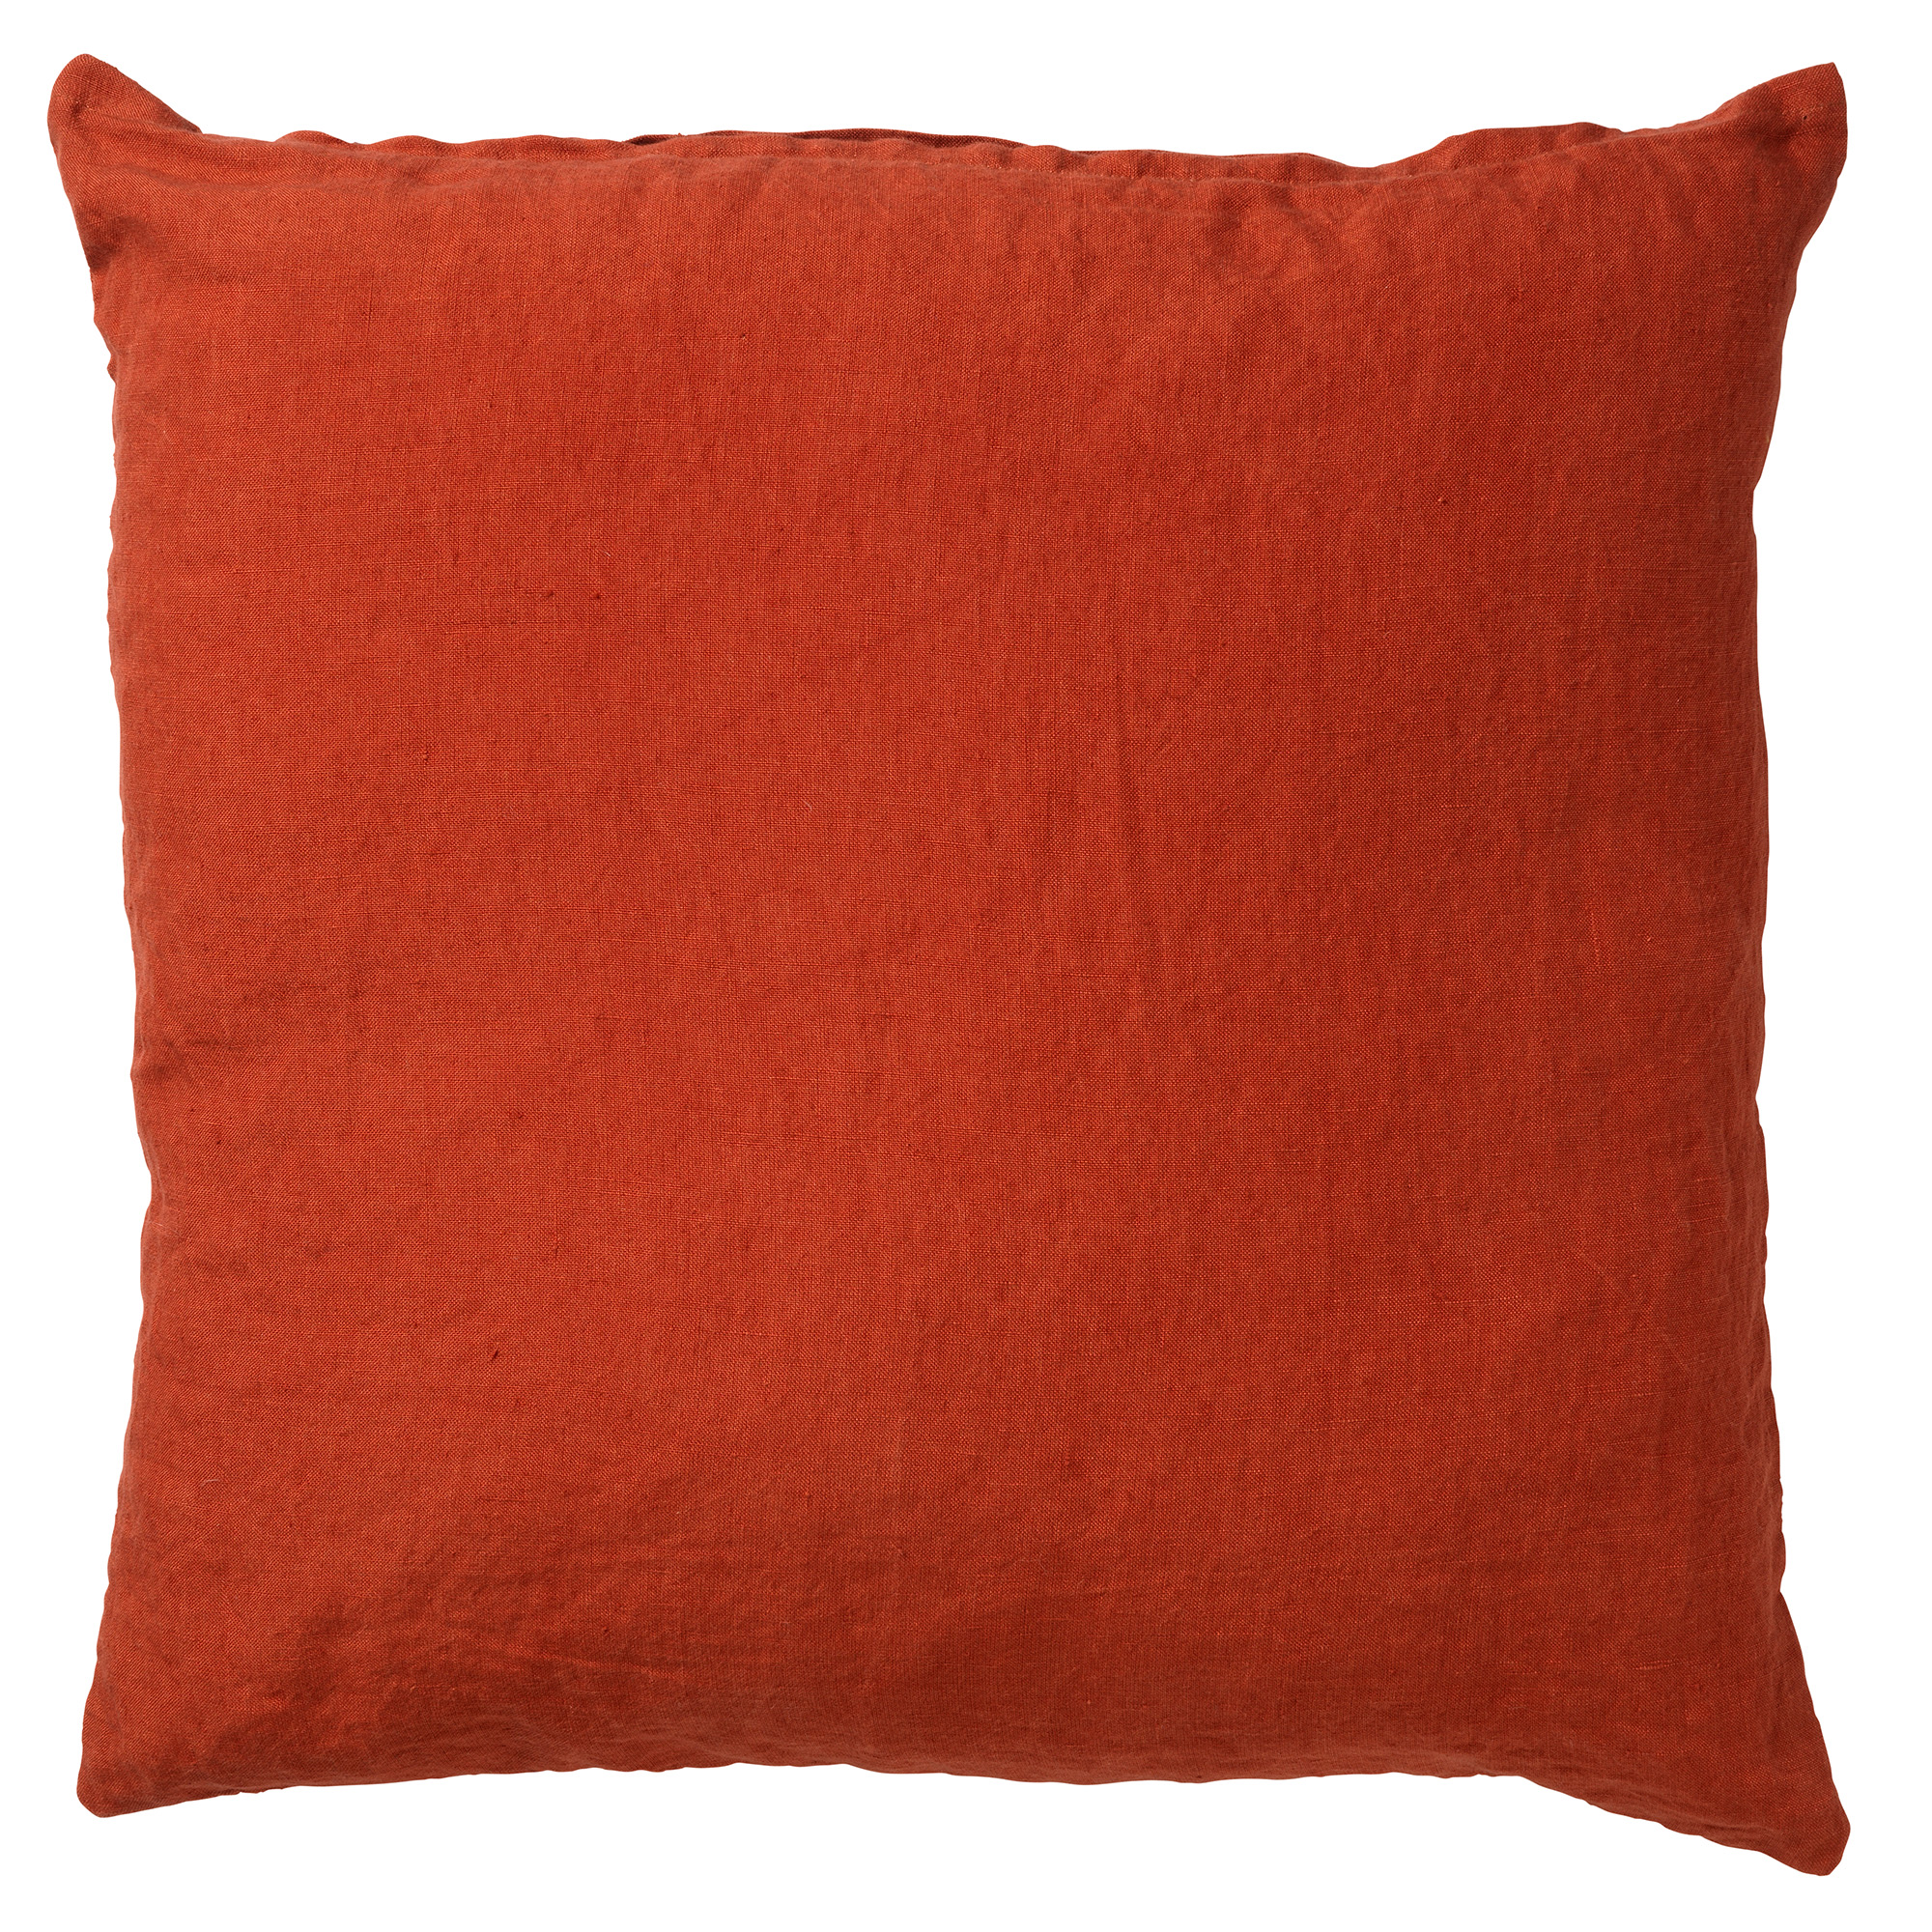 LINN - Cushion cover 45x45 cm Potters Clay - orange-terracotta